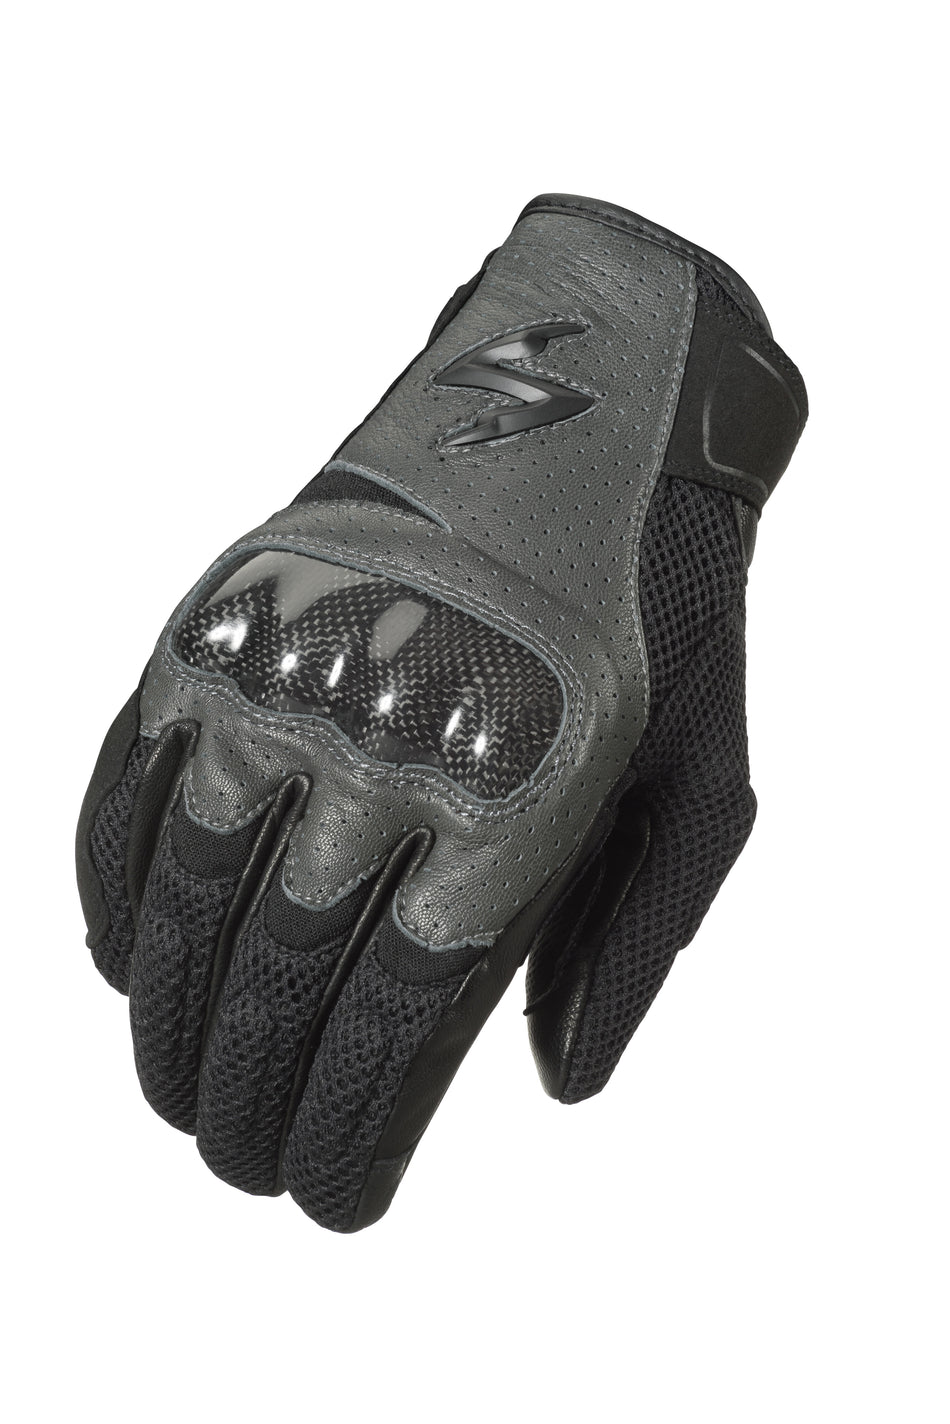 SCORPION EXO Vortex Air Gloves Grey Lg G36-065